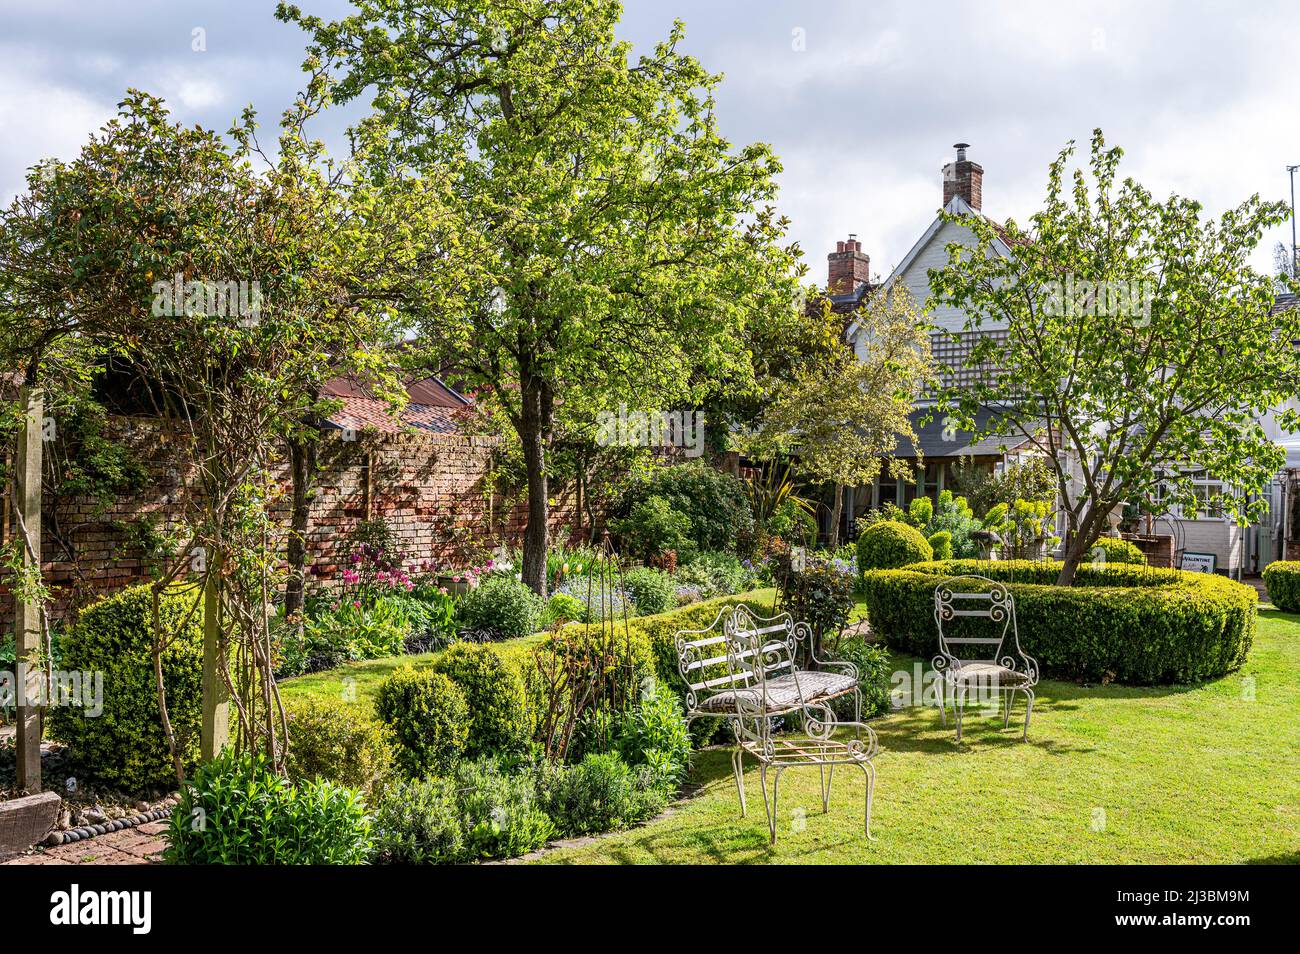 Gartenmöbel und Bäume im ummauerten Garten. Frühling in Suffolk, Englsnd, Großbritannien Stockfoto